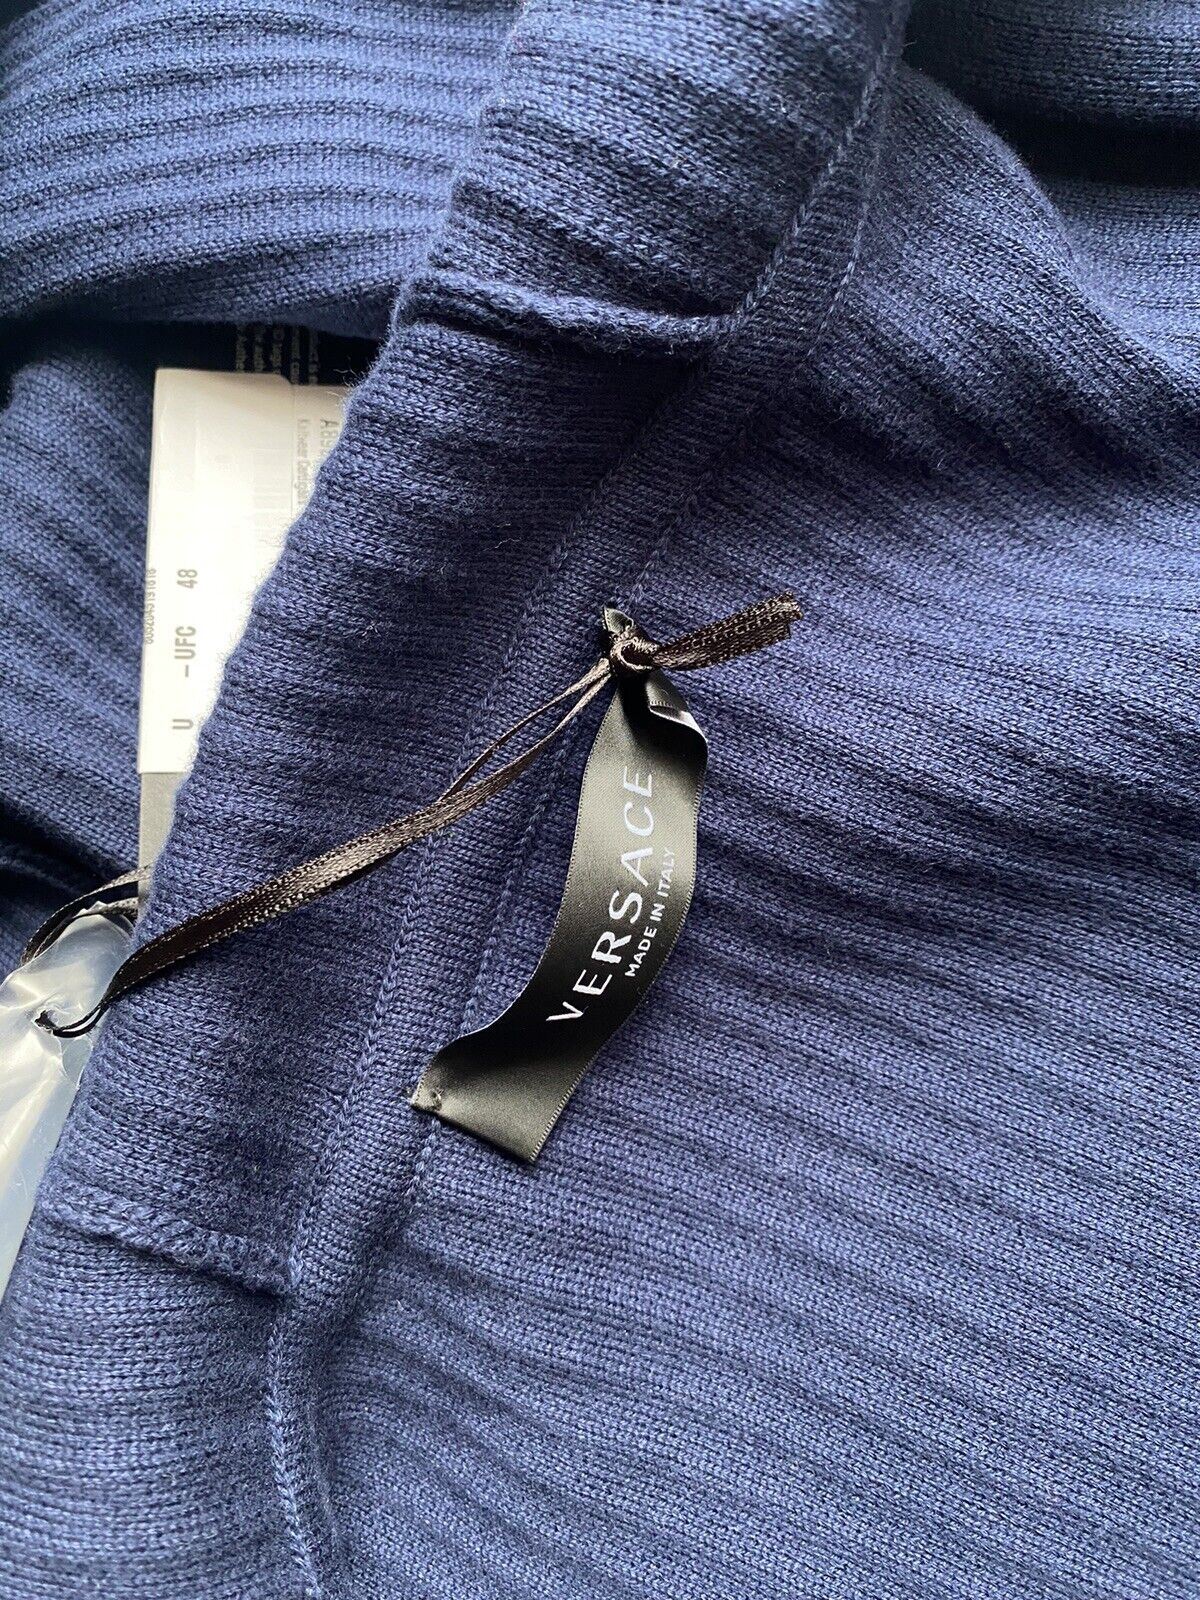 Мужская вязаная куртка Versace с худи синего цвета NWT 995 долларов США 48 США (58 евро) A237551 IT 